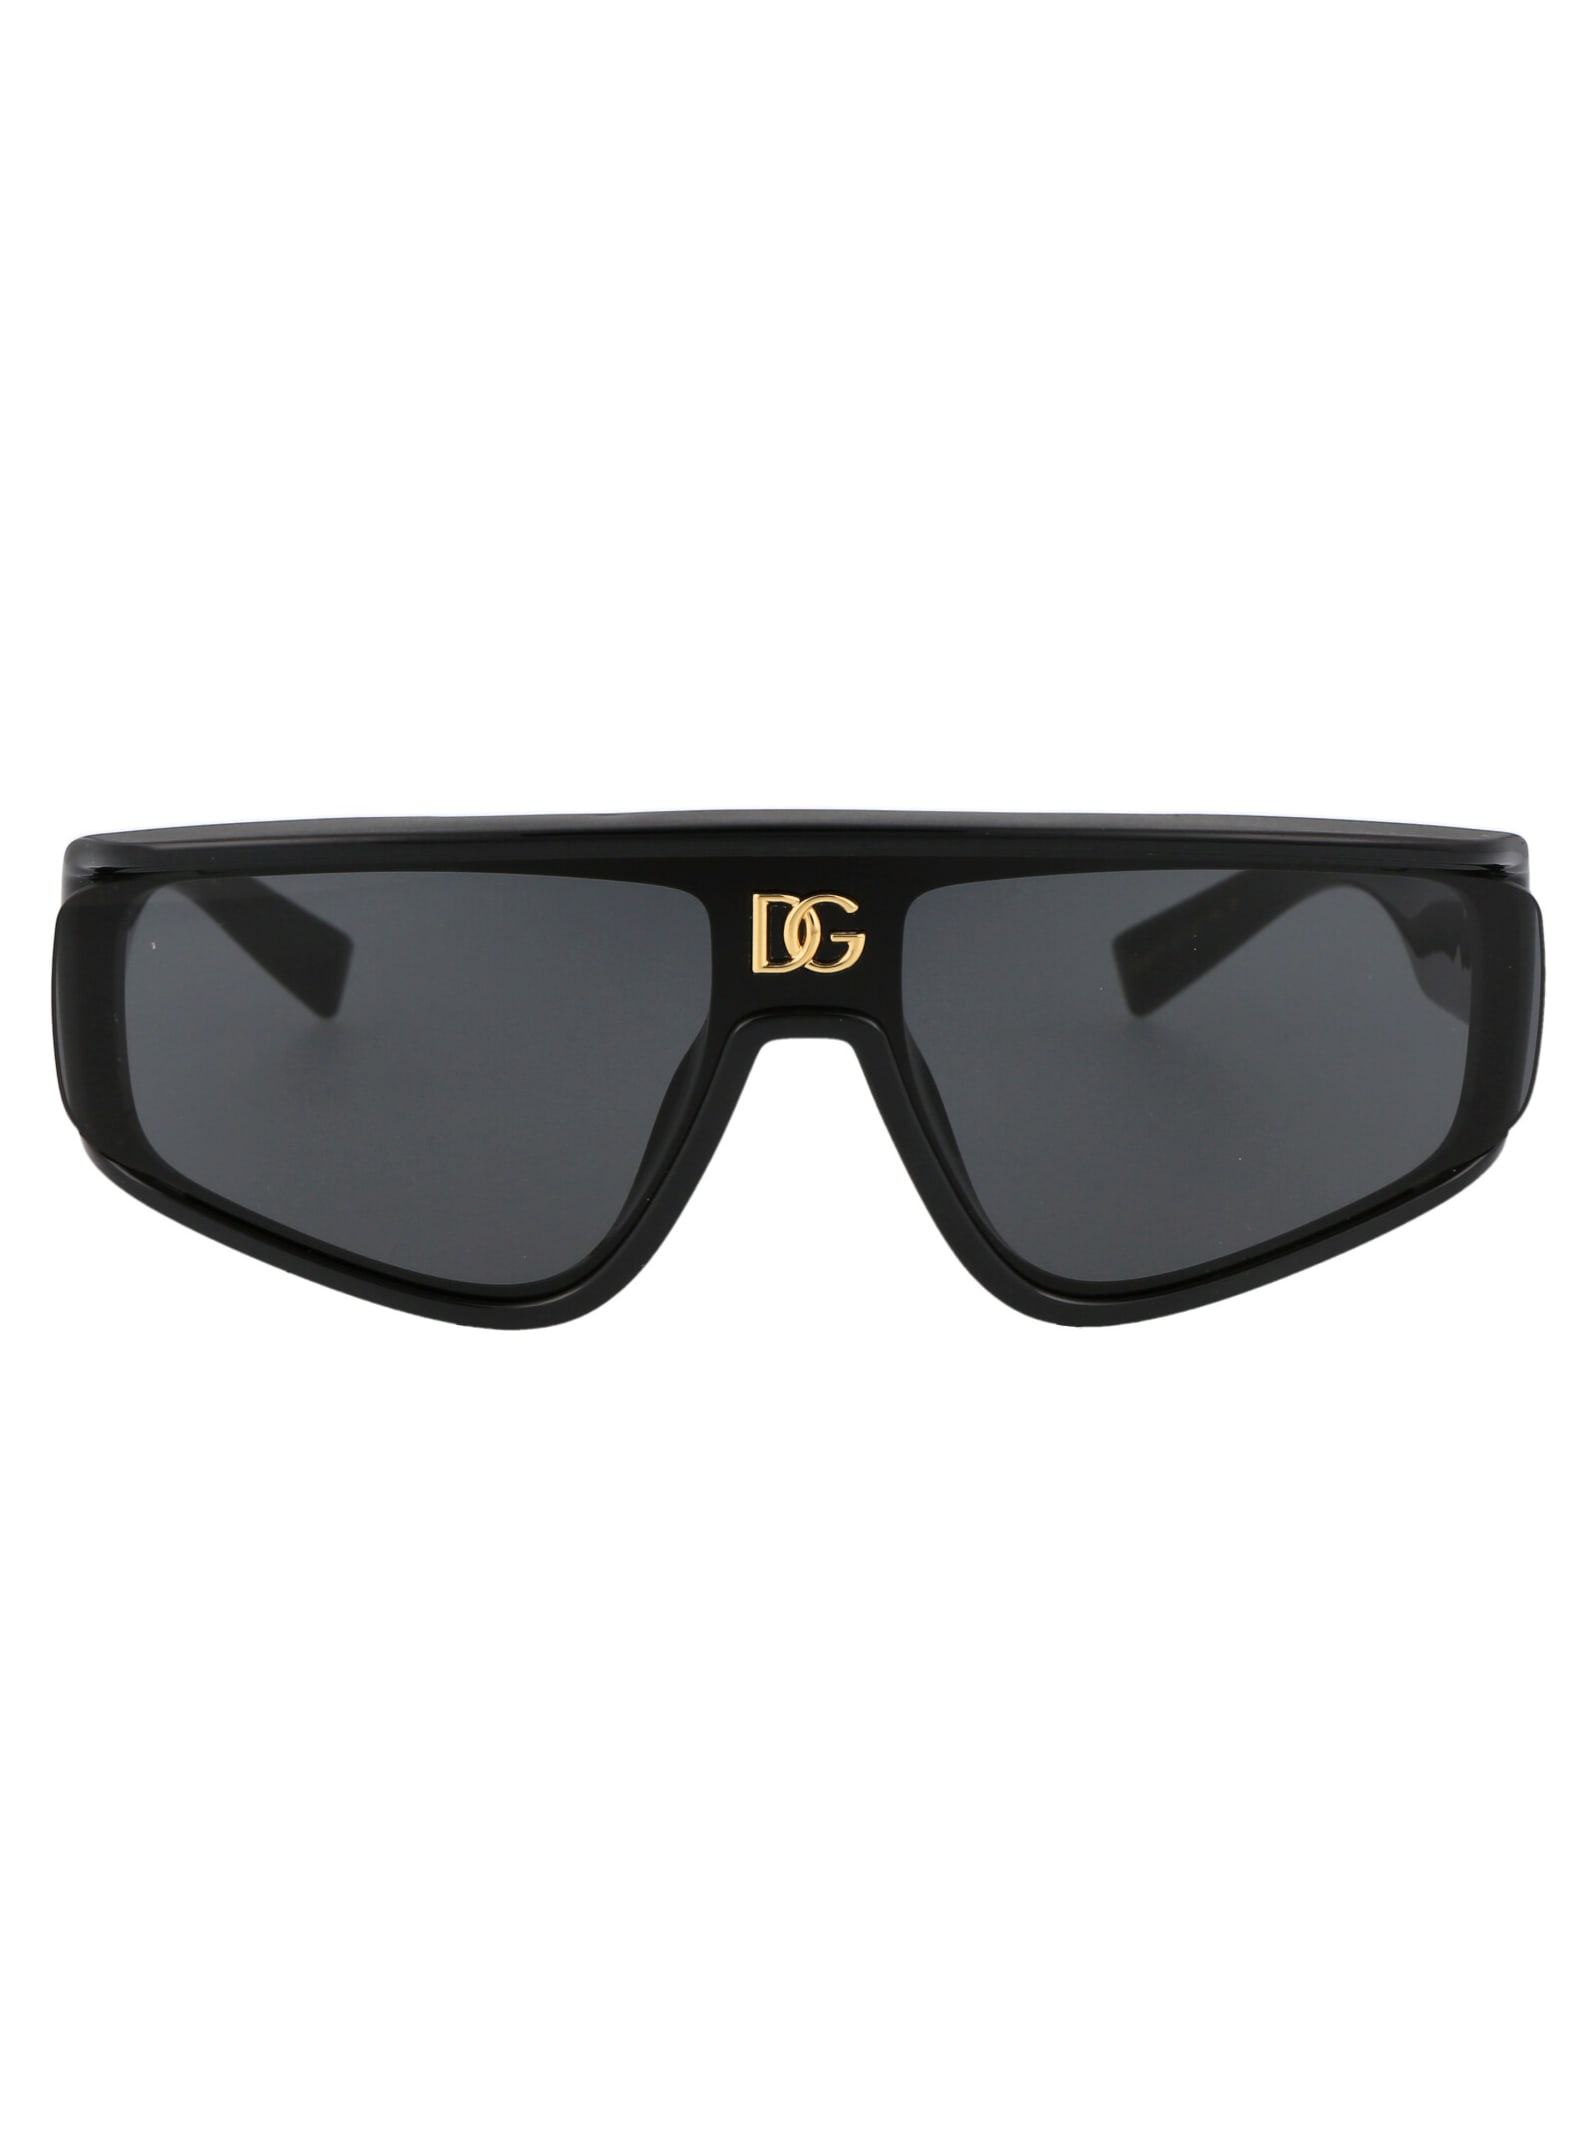 Dolce &amp; Gabbana Eyewear 0dg6177 Sunglasses In 501/87 Black